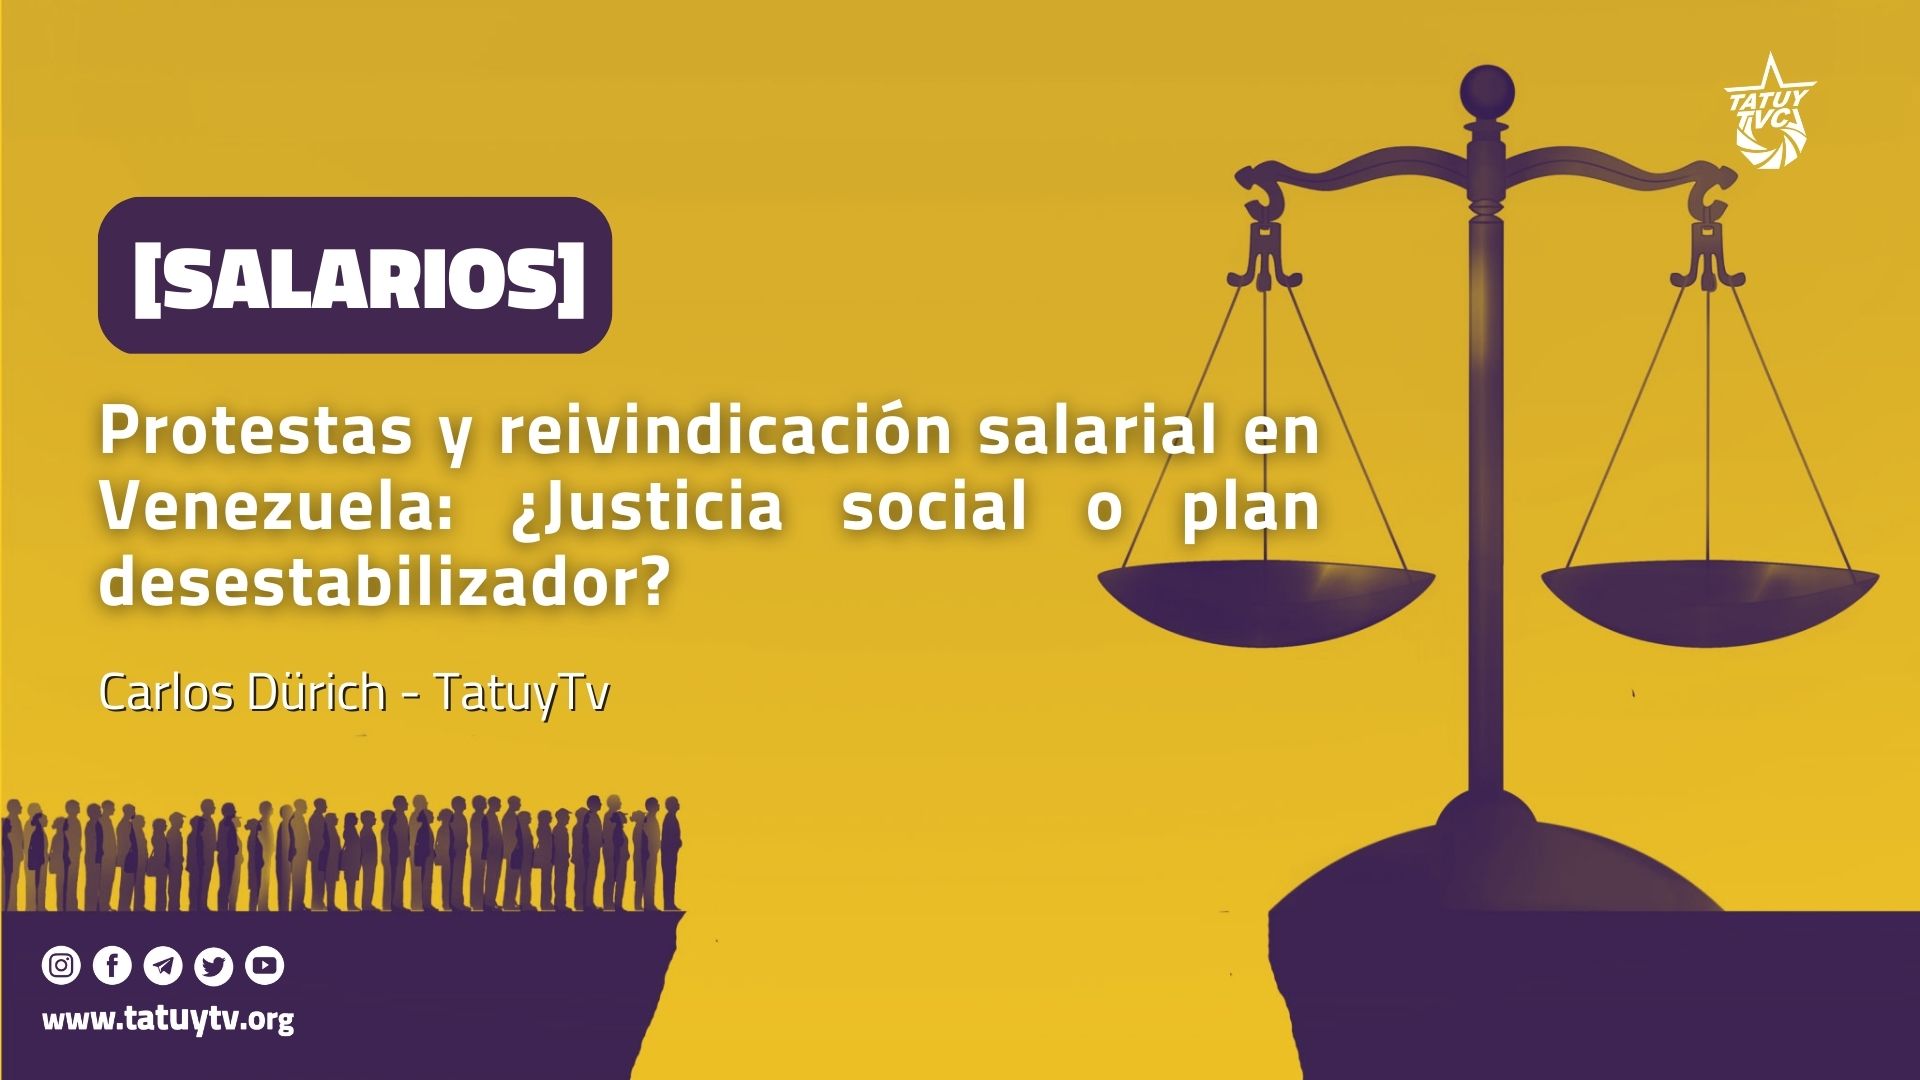 [SALARIOS] Protestas y reivindicación salarial en Venezuela: ¿Justicia social o plan desestabilizador?